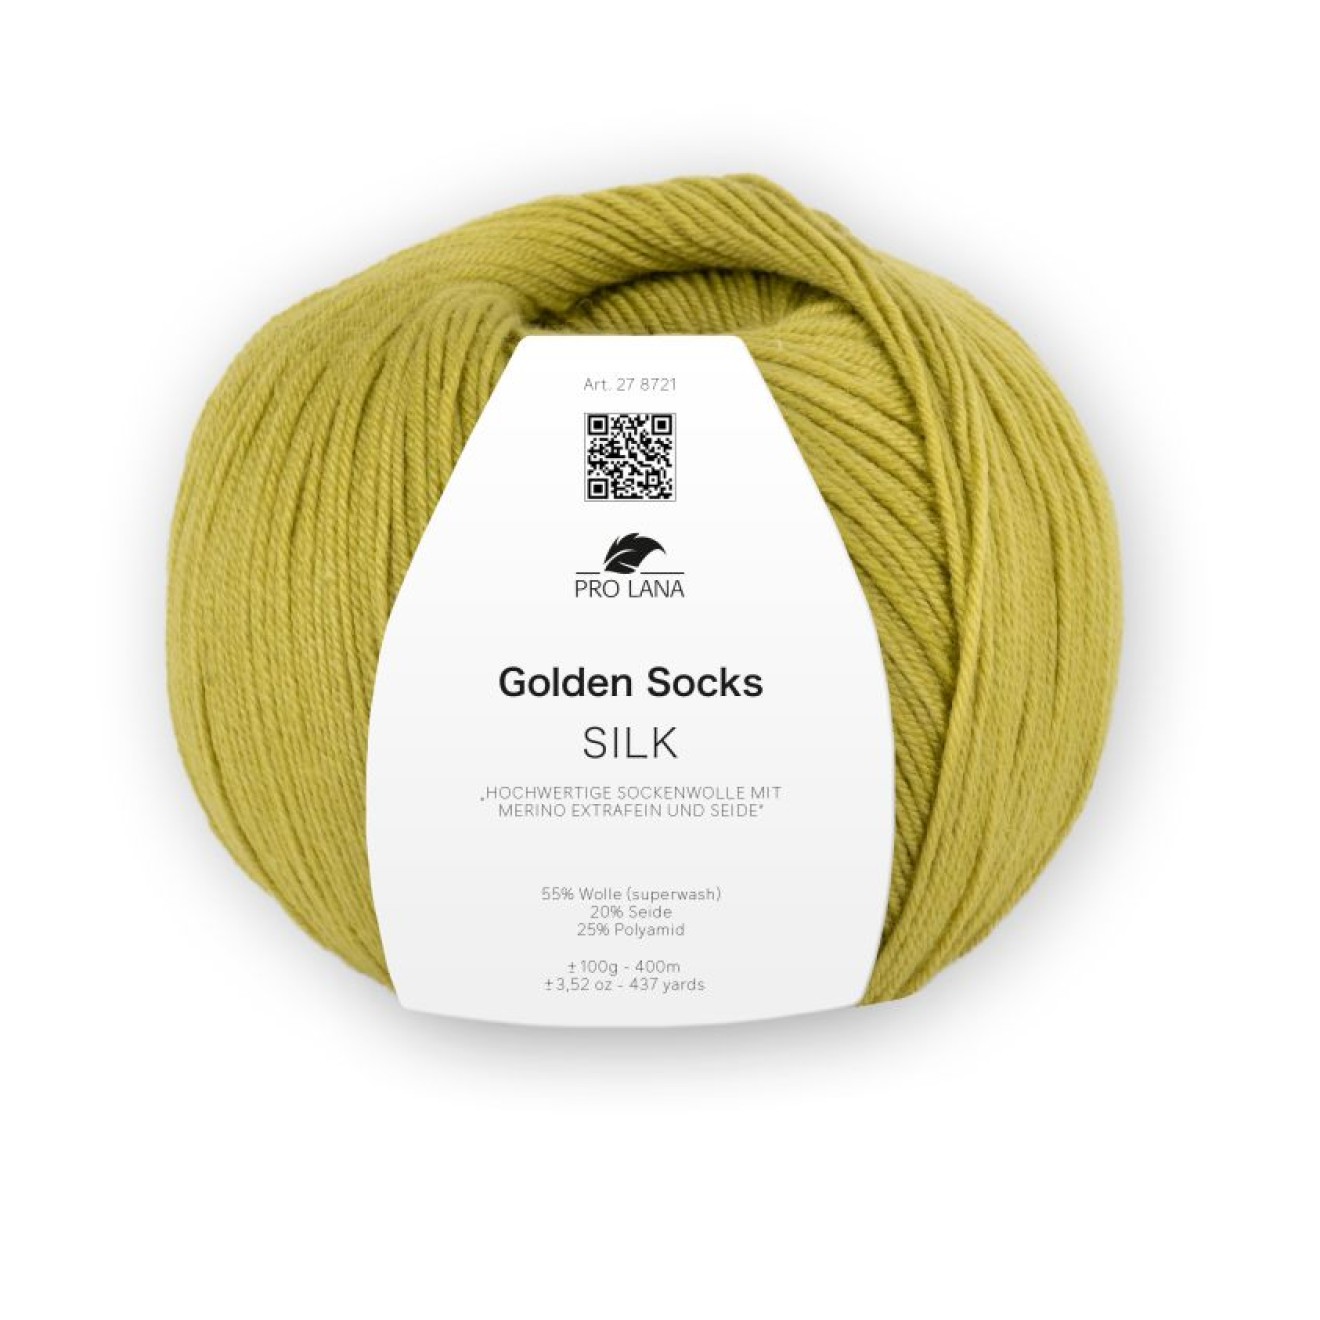 Golden Socks Silk